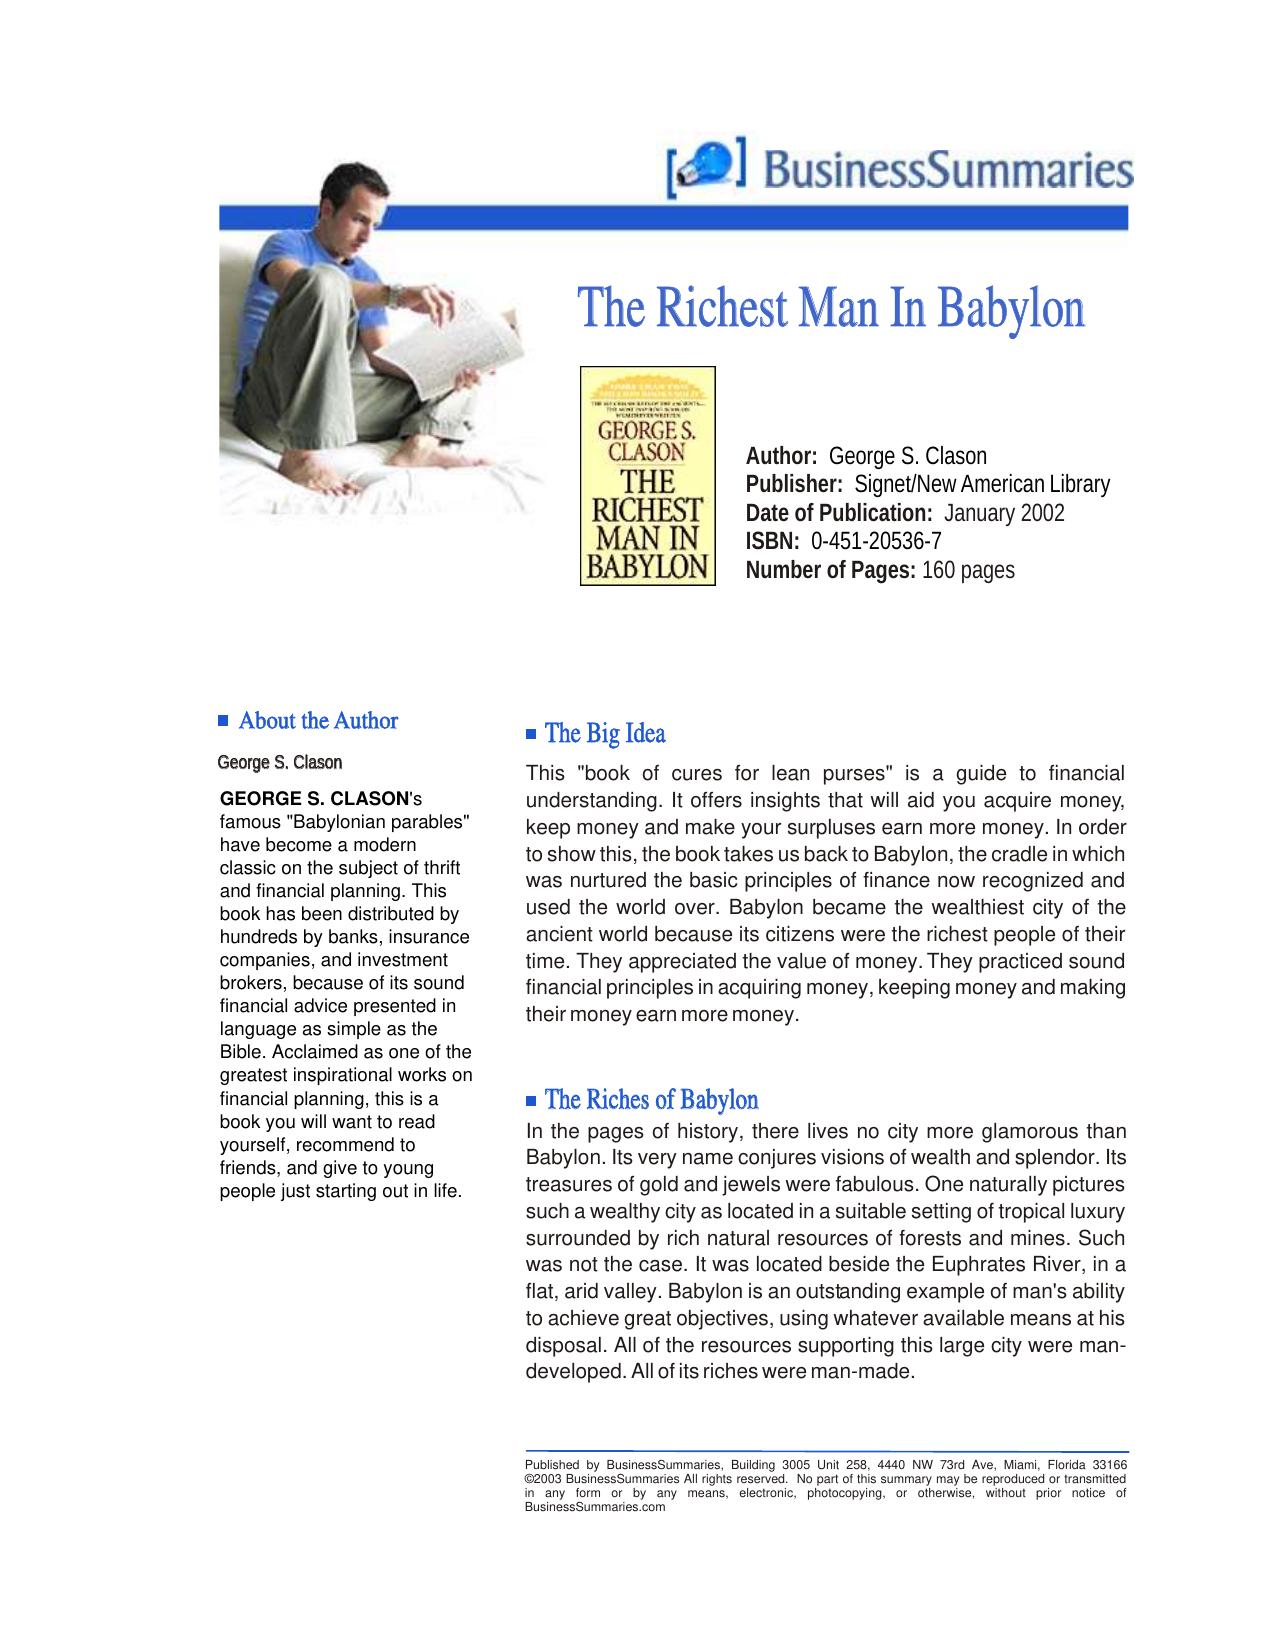 The Richest Man in Babylon - Summary